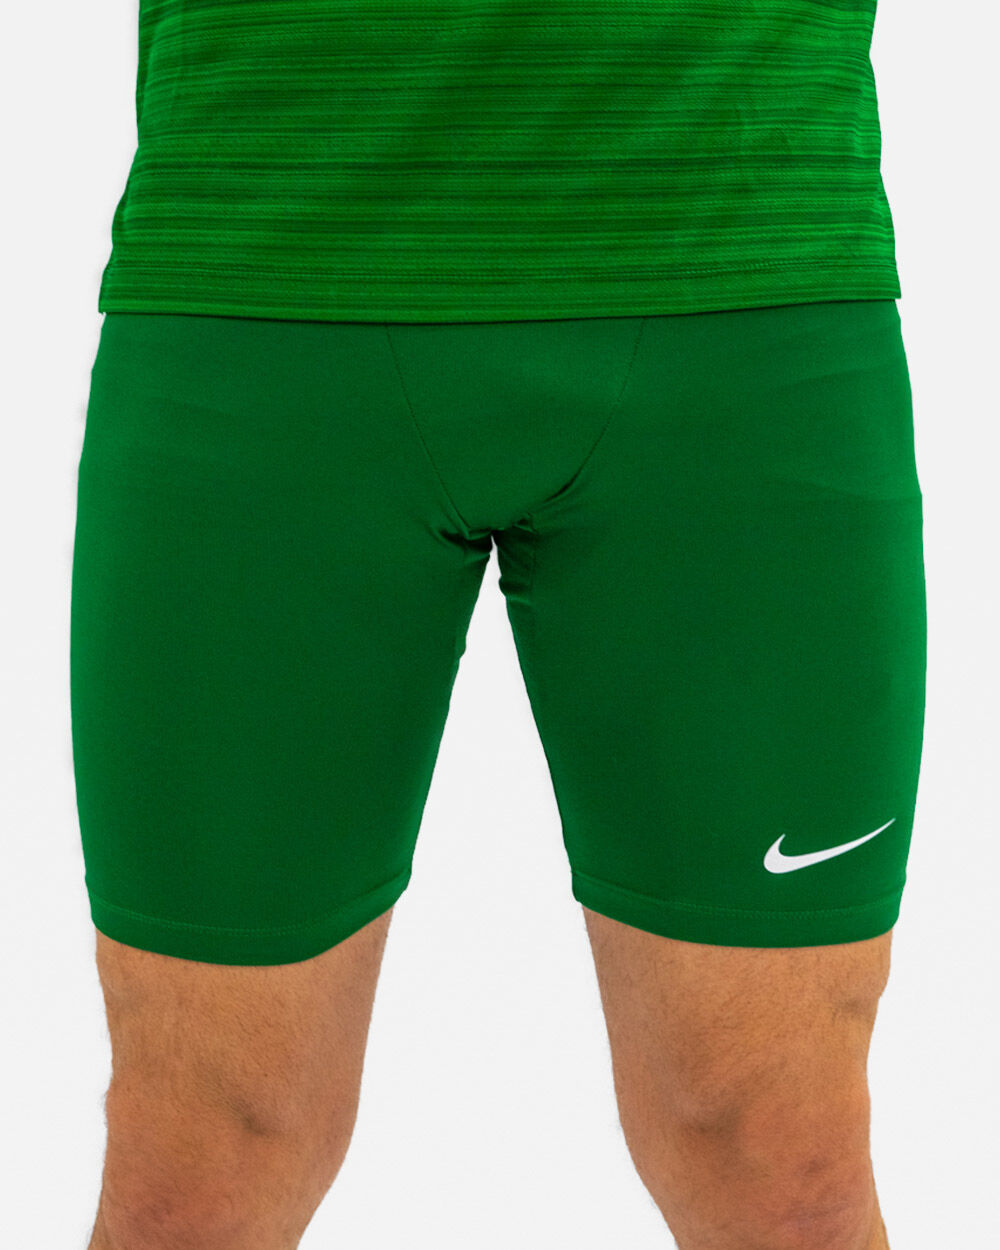 Mallas cortas para correr Nike Stock Verde para Hombre - NT0307-302